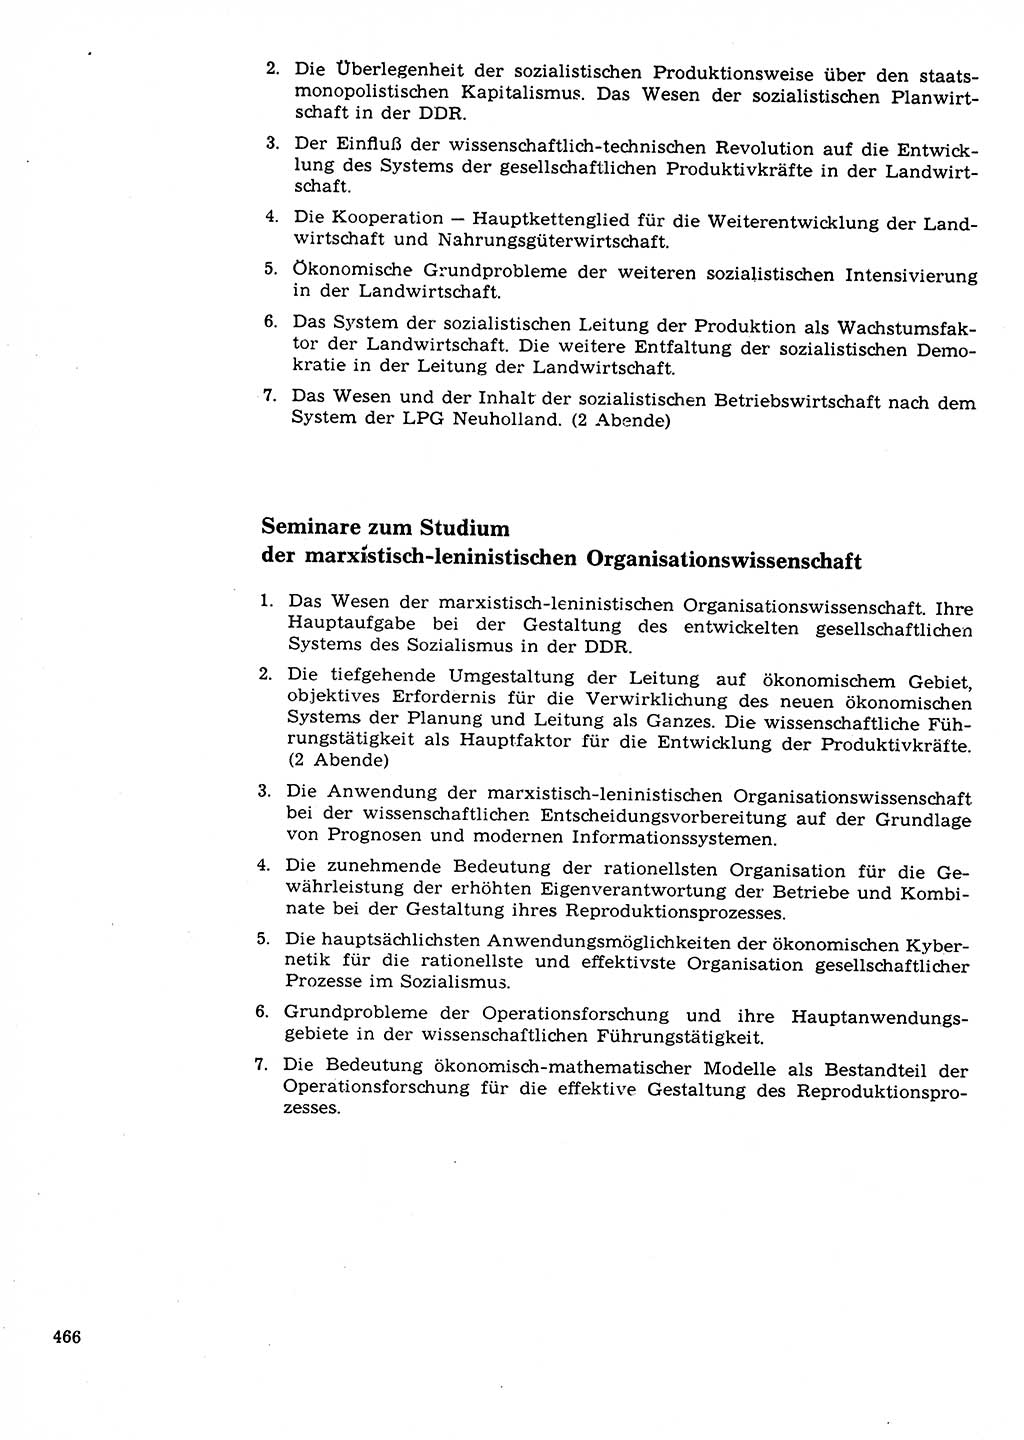 Neuer Weg (NW), Organ des Zentralkomitees (ZK) der SED (Sozialistische Einheitspartei Deutschlands) für Fragen des Parteilebens, 23. Jahrgang [Deutsche Demokratische Republik (DDR)] 1968, Seite 466 (NW ZK SED DDR 1968, S. 466)